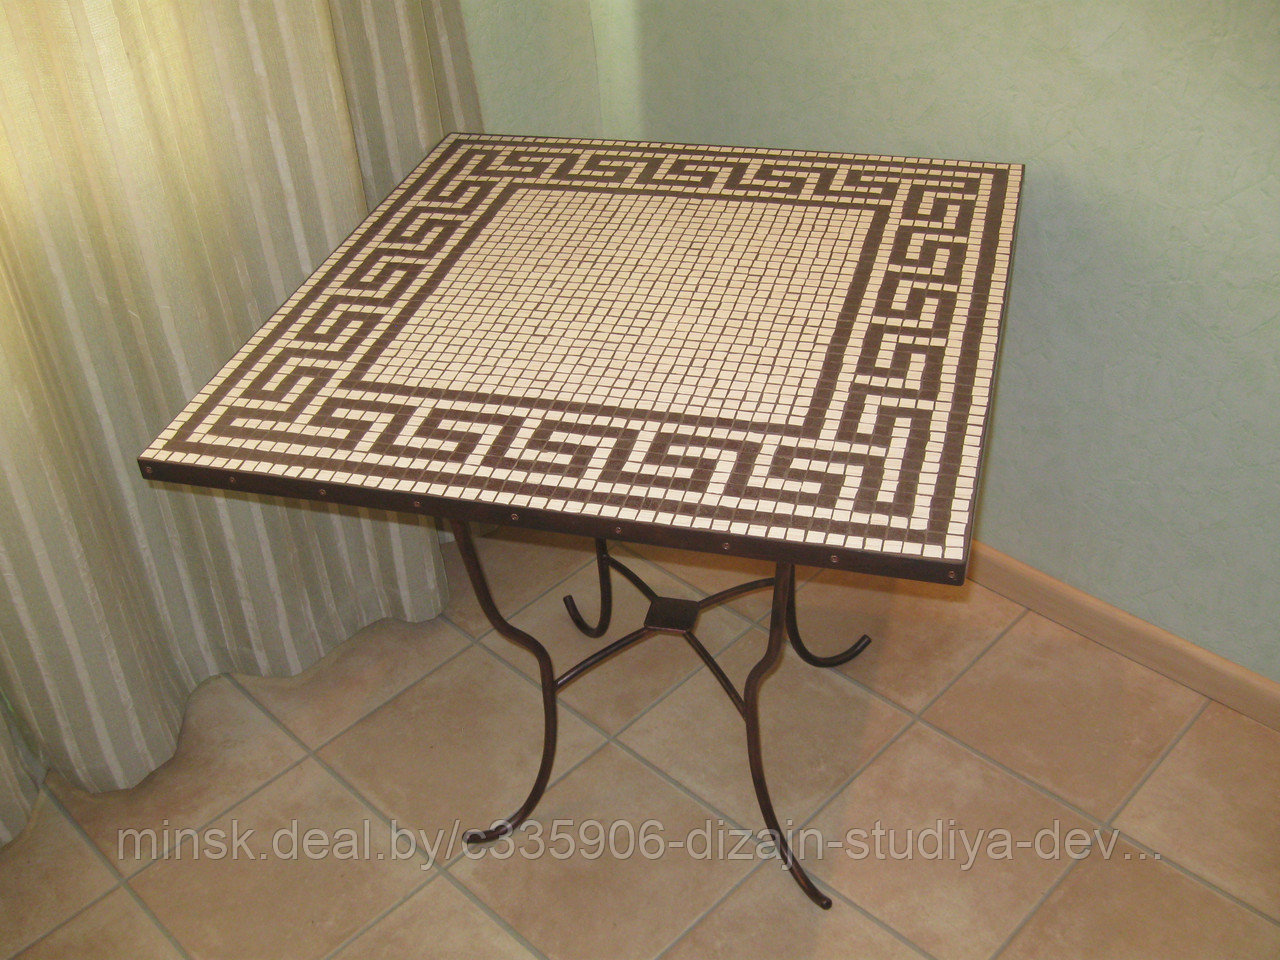 Мозаичный обеденный стол "Греческий_2", фото 1